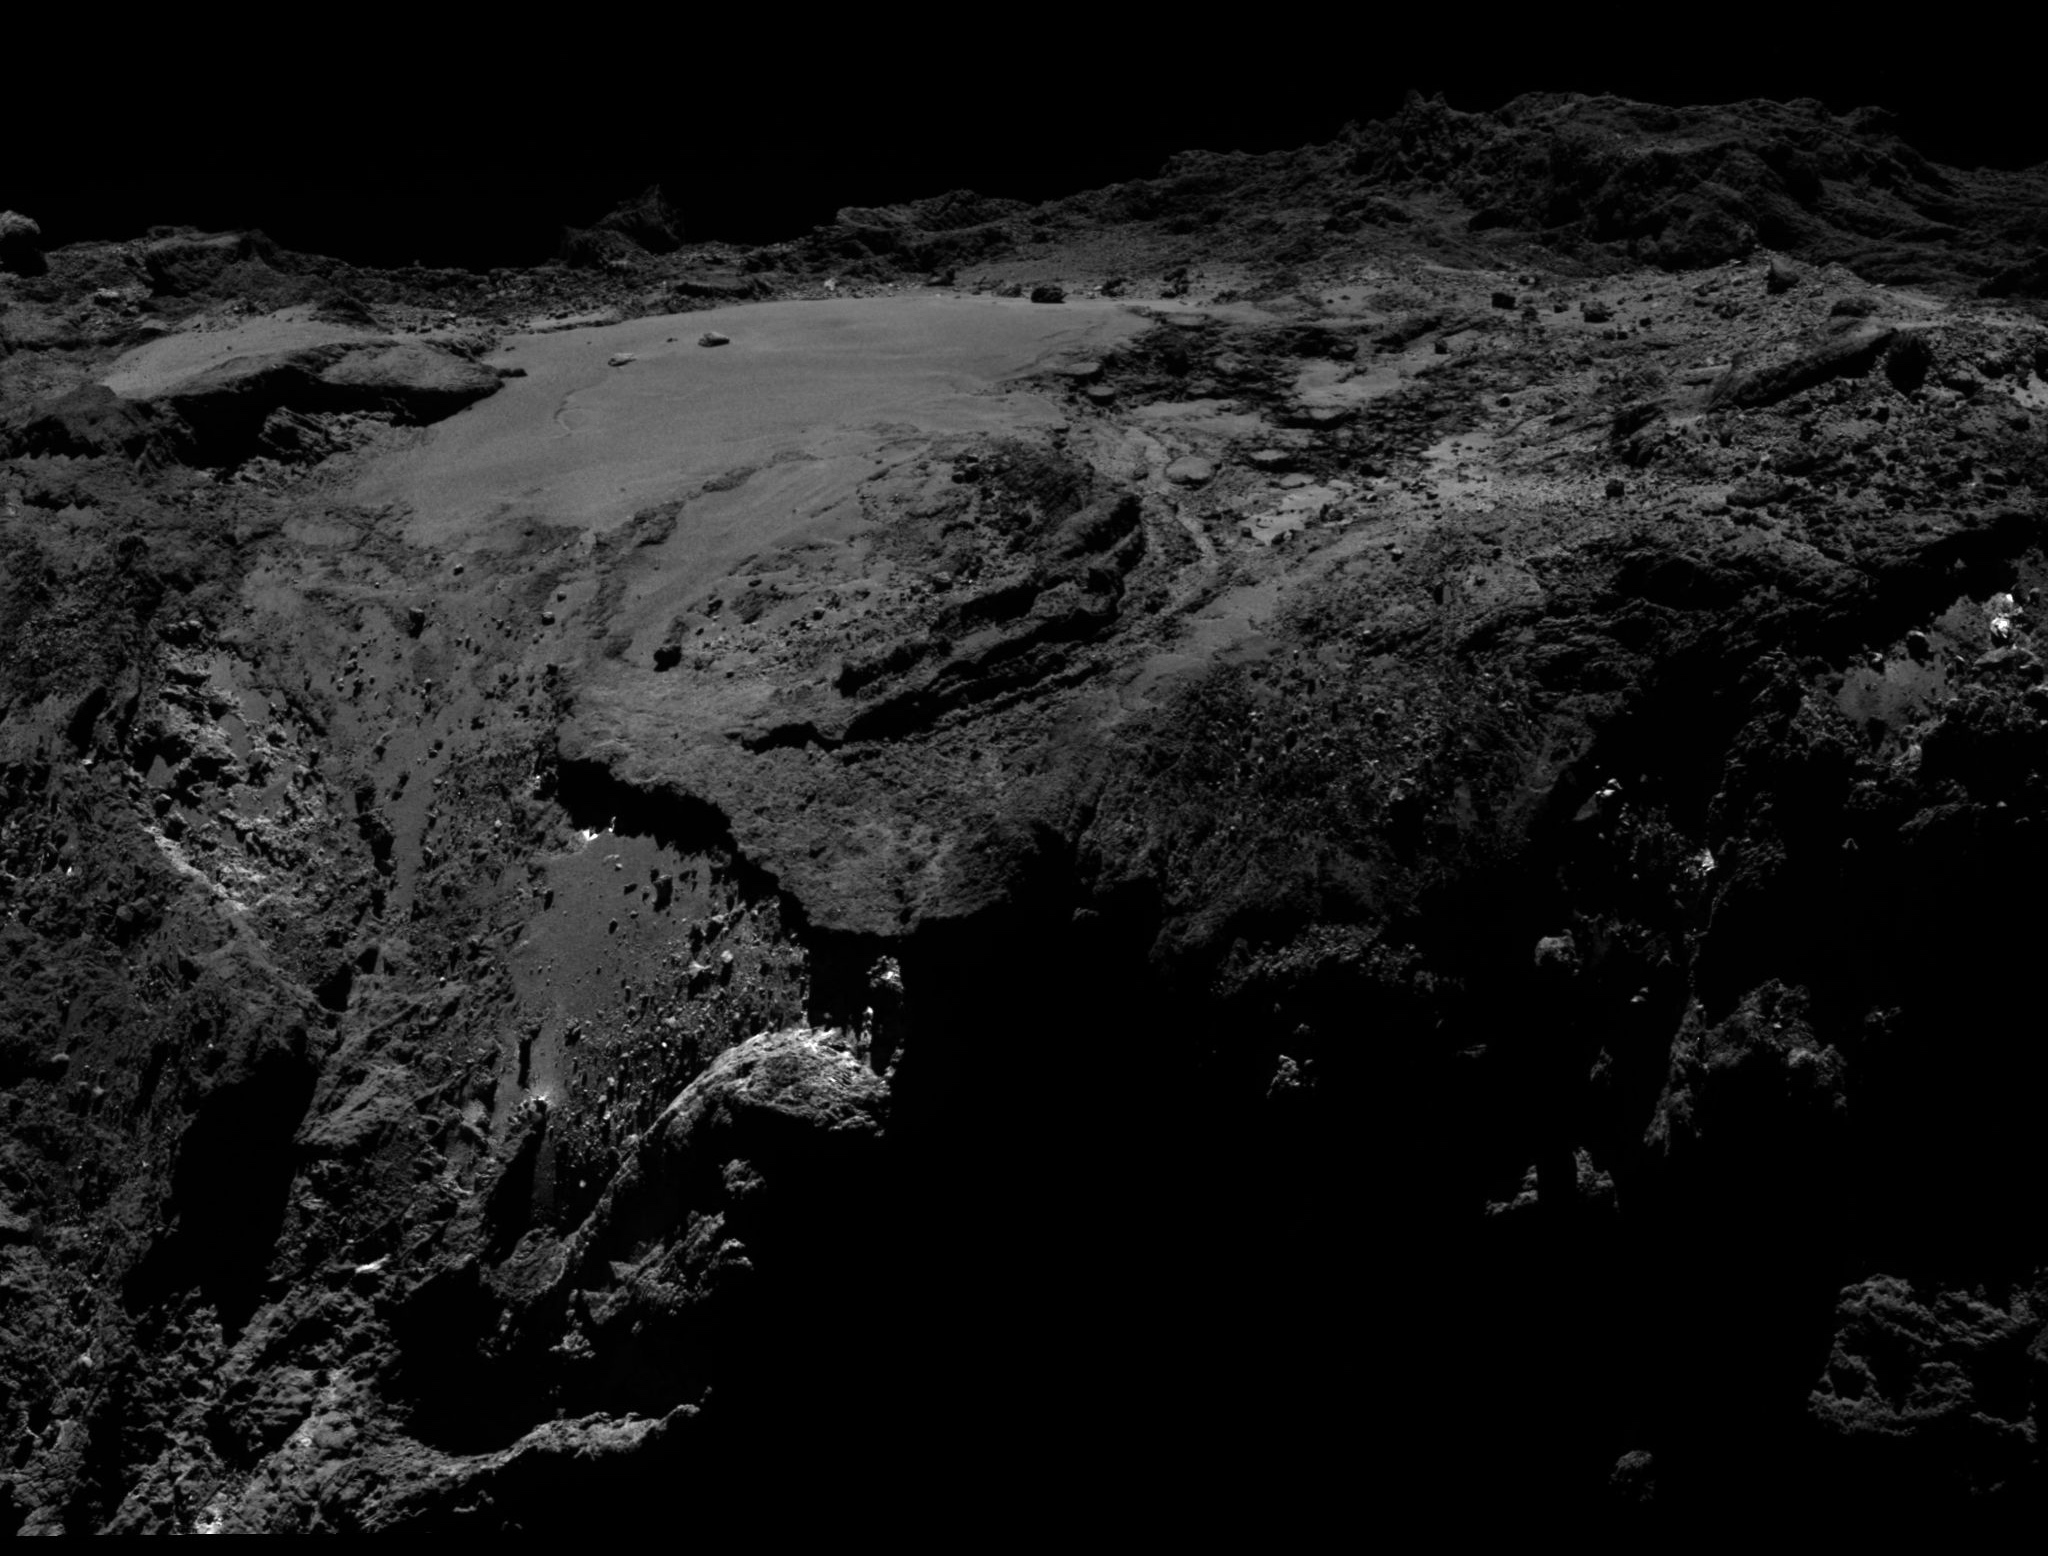 La région d’Imhotep, sur le grand lobe de Tchouri, imagée par Rosetta le 19 mars 2016 à 12&nbsp;km de la surface. Quelques arpents de glace d’eau exposée ont été observés par la sonde européenne. © ESA/Rosetta/MPS for OSIRIS Team MPS/UPD/LAM/IAA/SSO/INTA/UPM/DASP/IDA